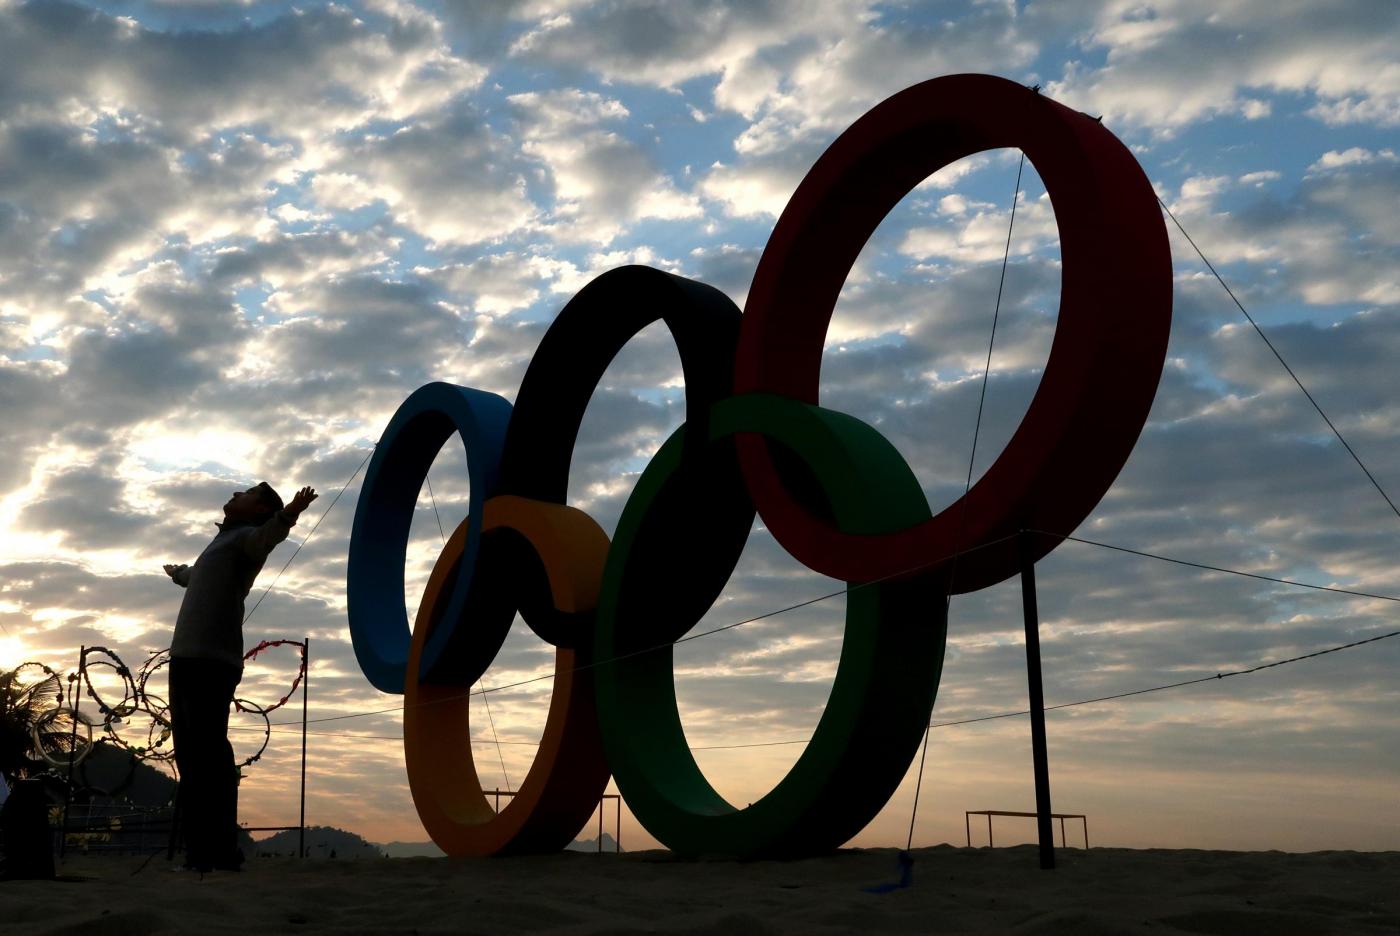 Ultimi preparativi per le Olimpiadi di Rio 2016 a Rio de Janeiro qui sulla spiaggia di Ipanema